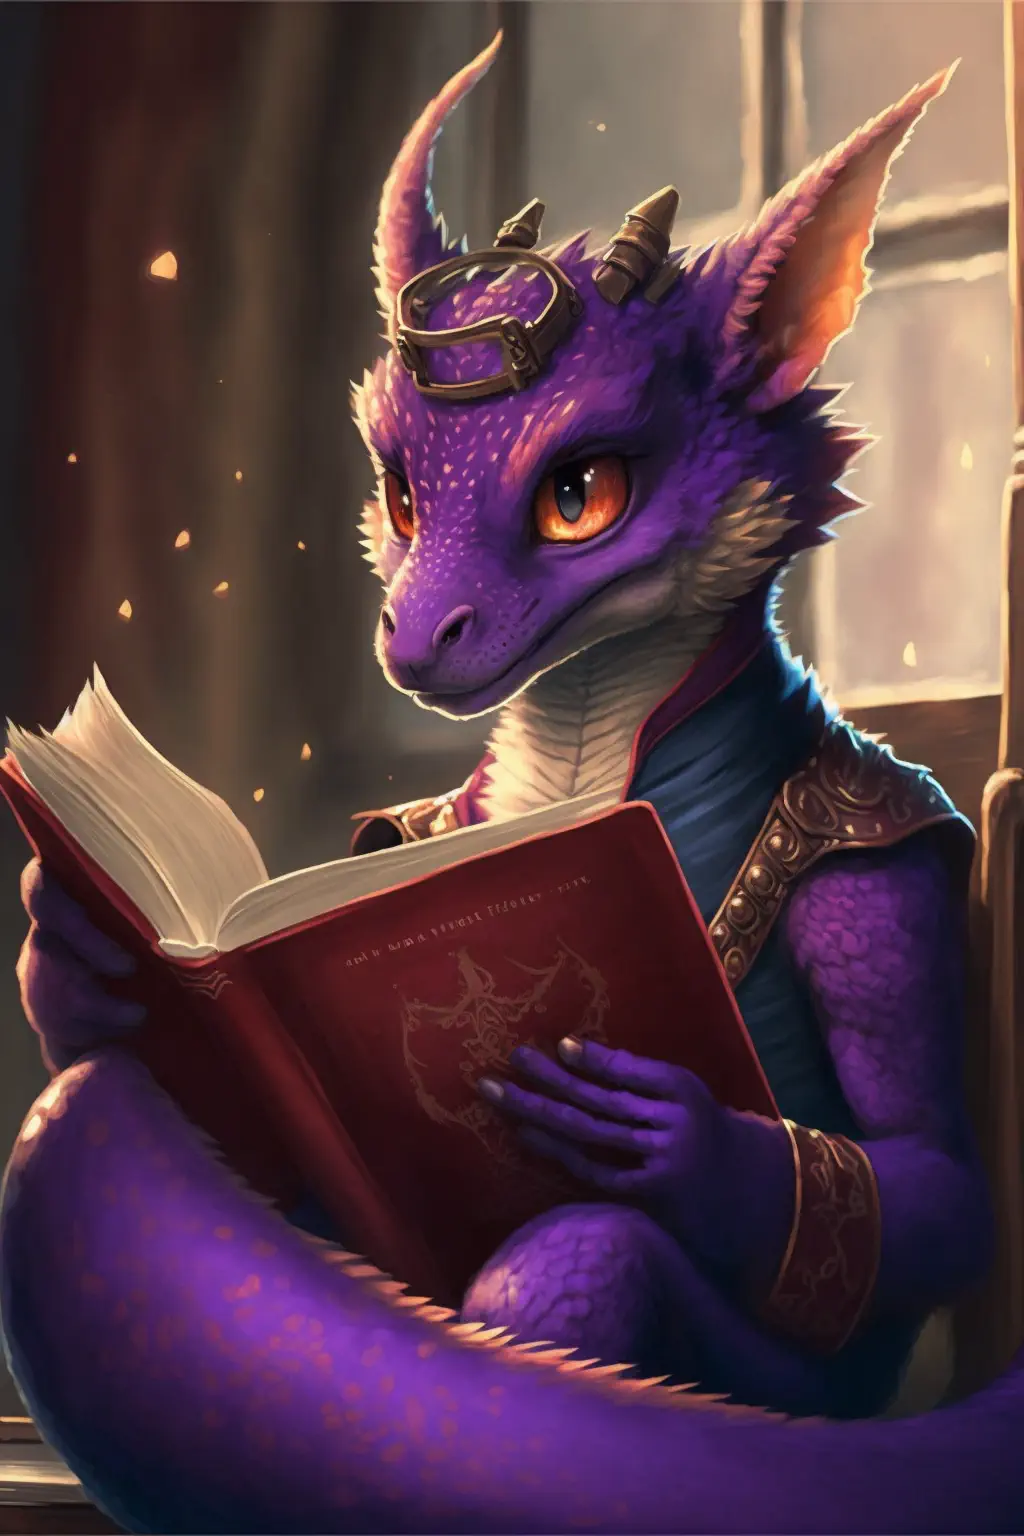 Drakosha_lovable_beautuful_purple_femail_dragon_reading_a_book__f863d355-799c-4a86-a7ce-9ae3c9e95a20